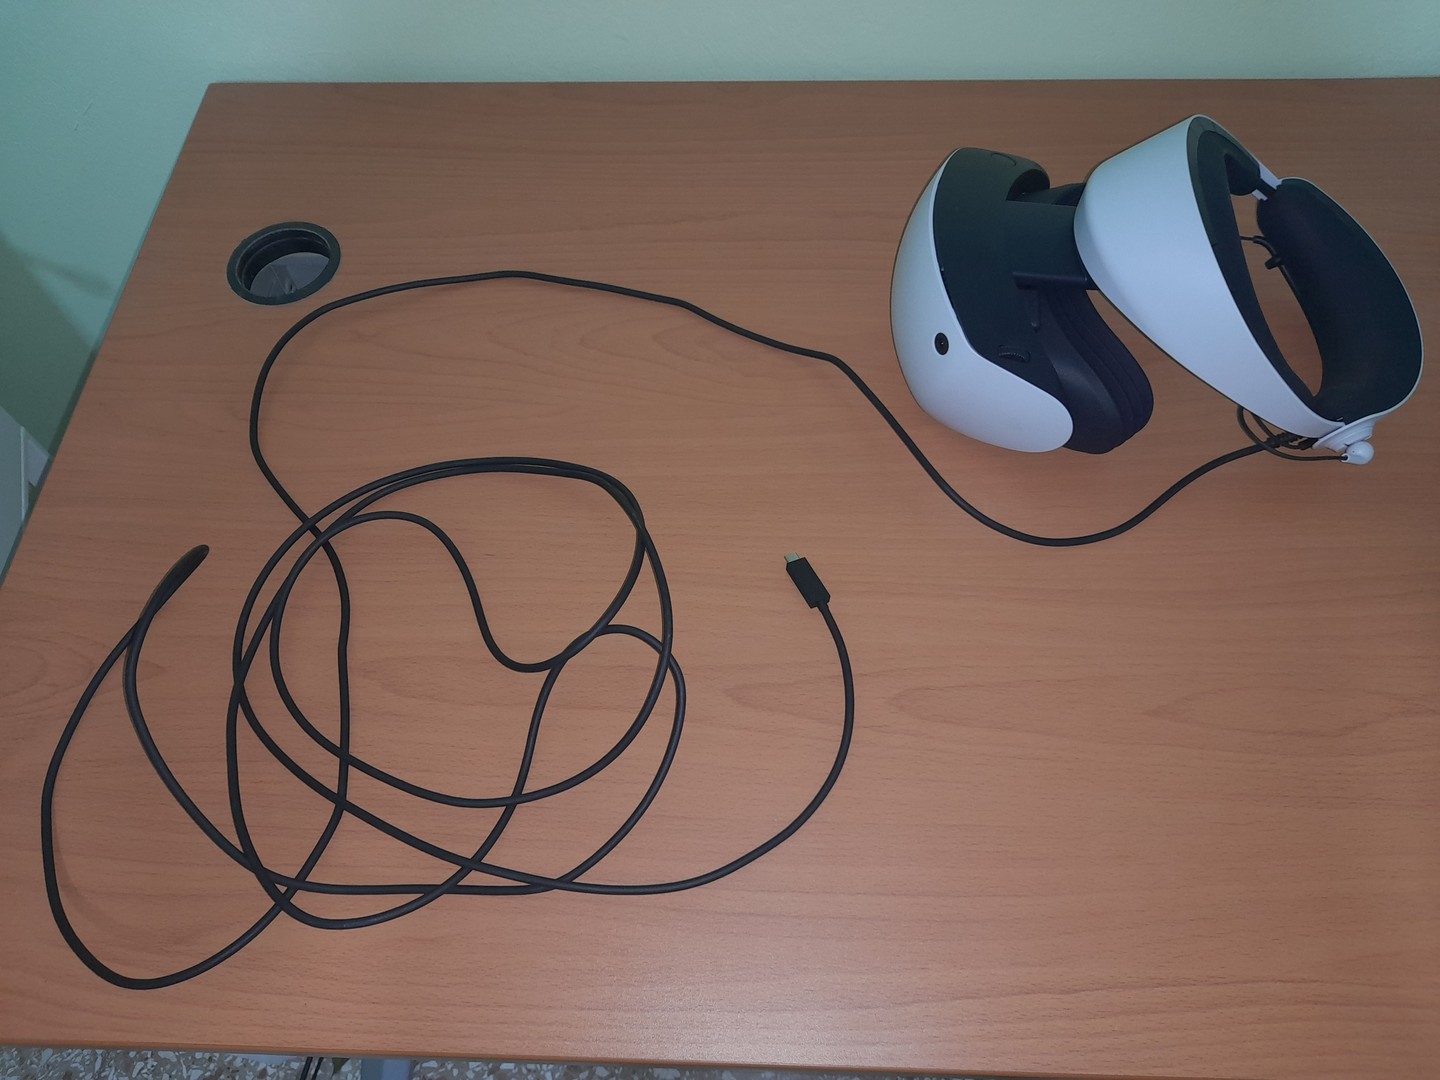 consolas y videojuegos - psvr2 : headset de realidad virtual para playstation 5 (3 horas de uso) 6